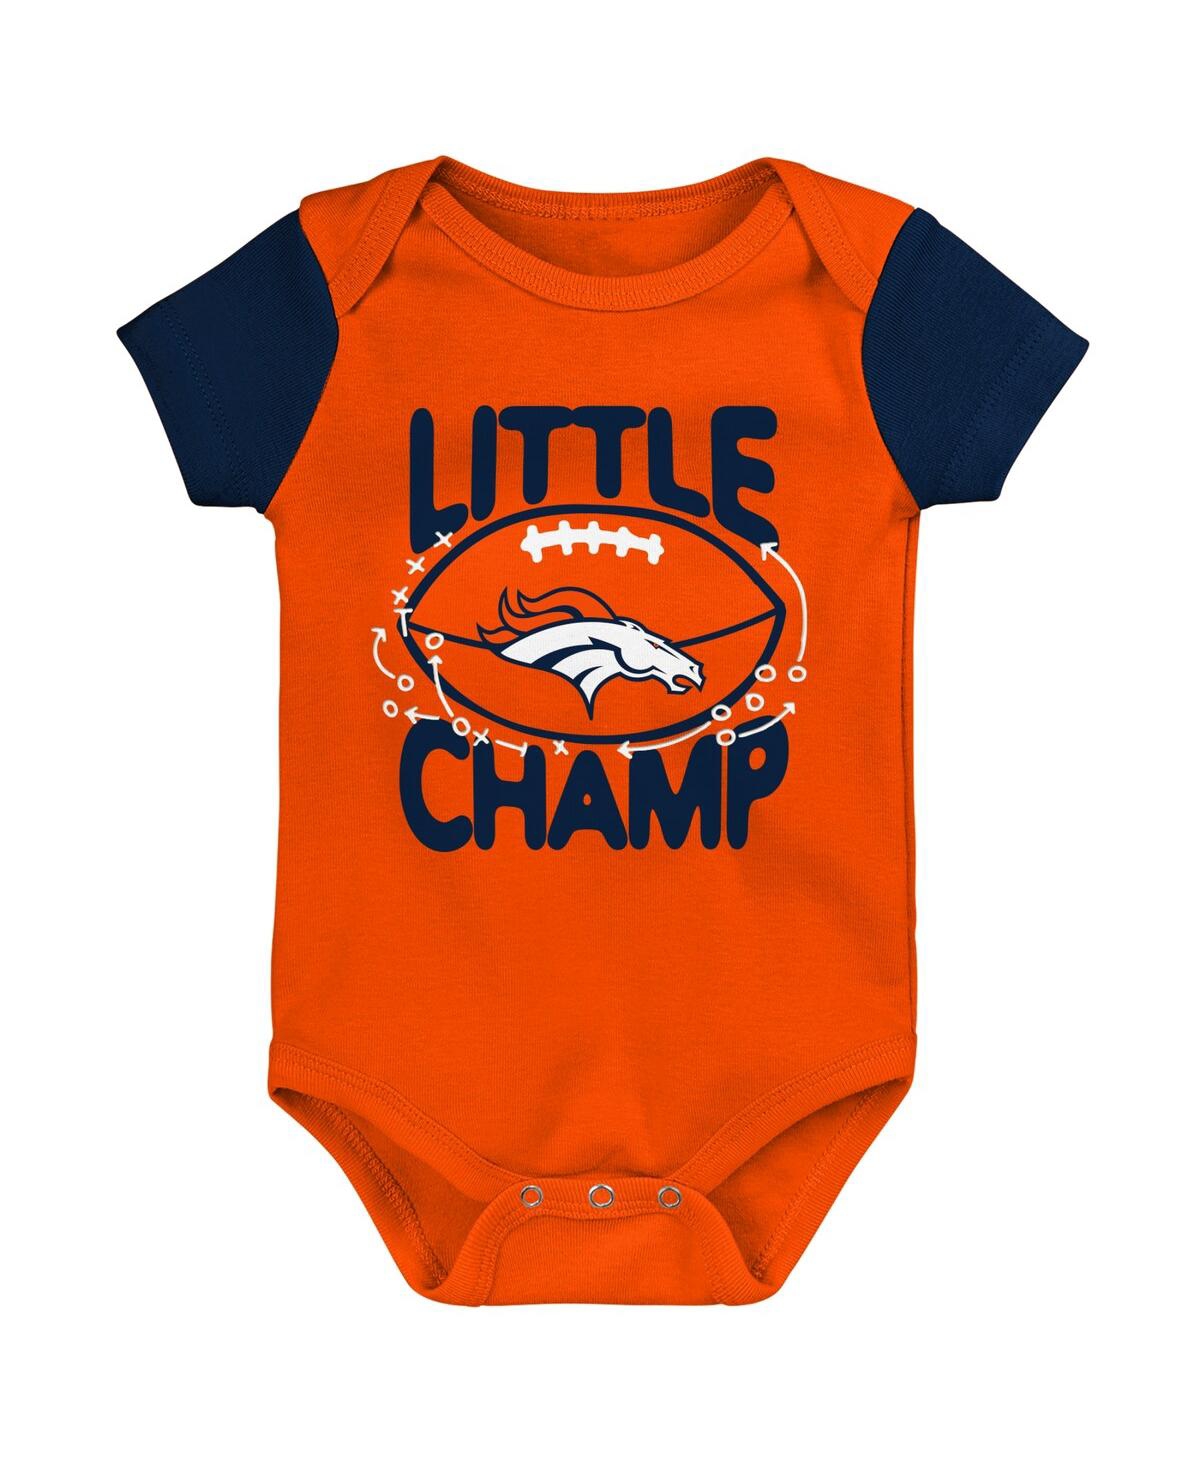 Shop Outerstuff Newborn And Infant Boys And Girls Orange, Navy Denver Broncos Little Champ Three-piece Bodysuit Bib  In Orange,navy